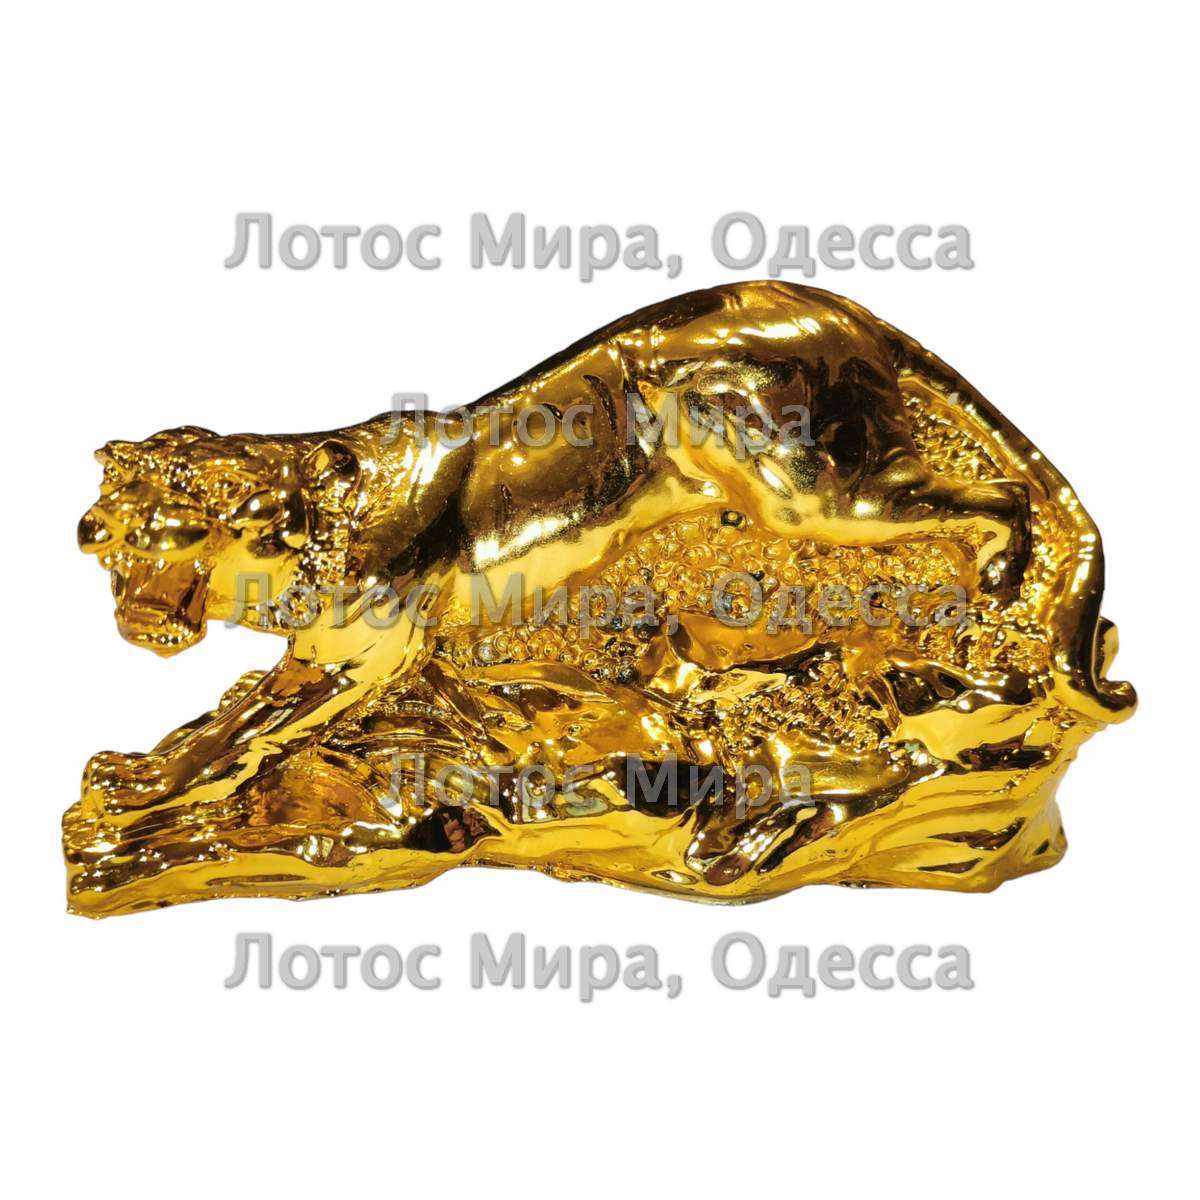 Тигр под золото 6,5 см. 0400